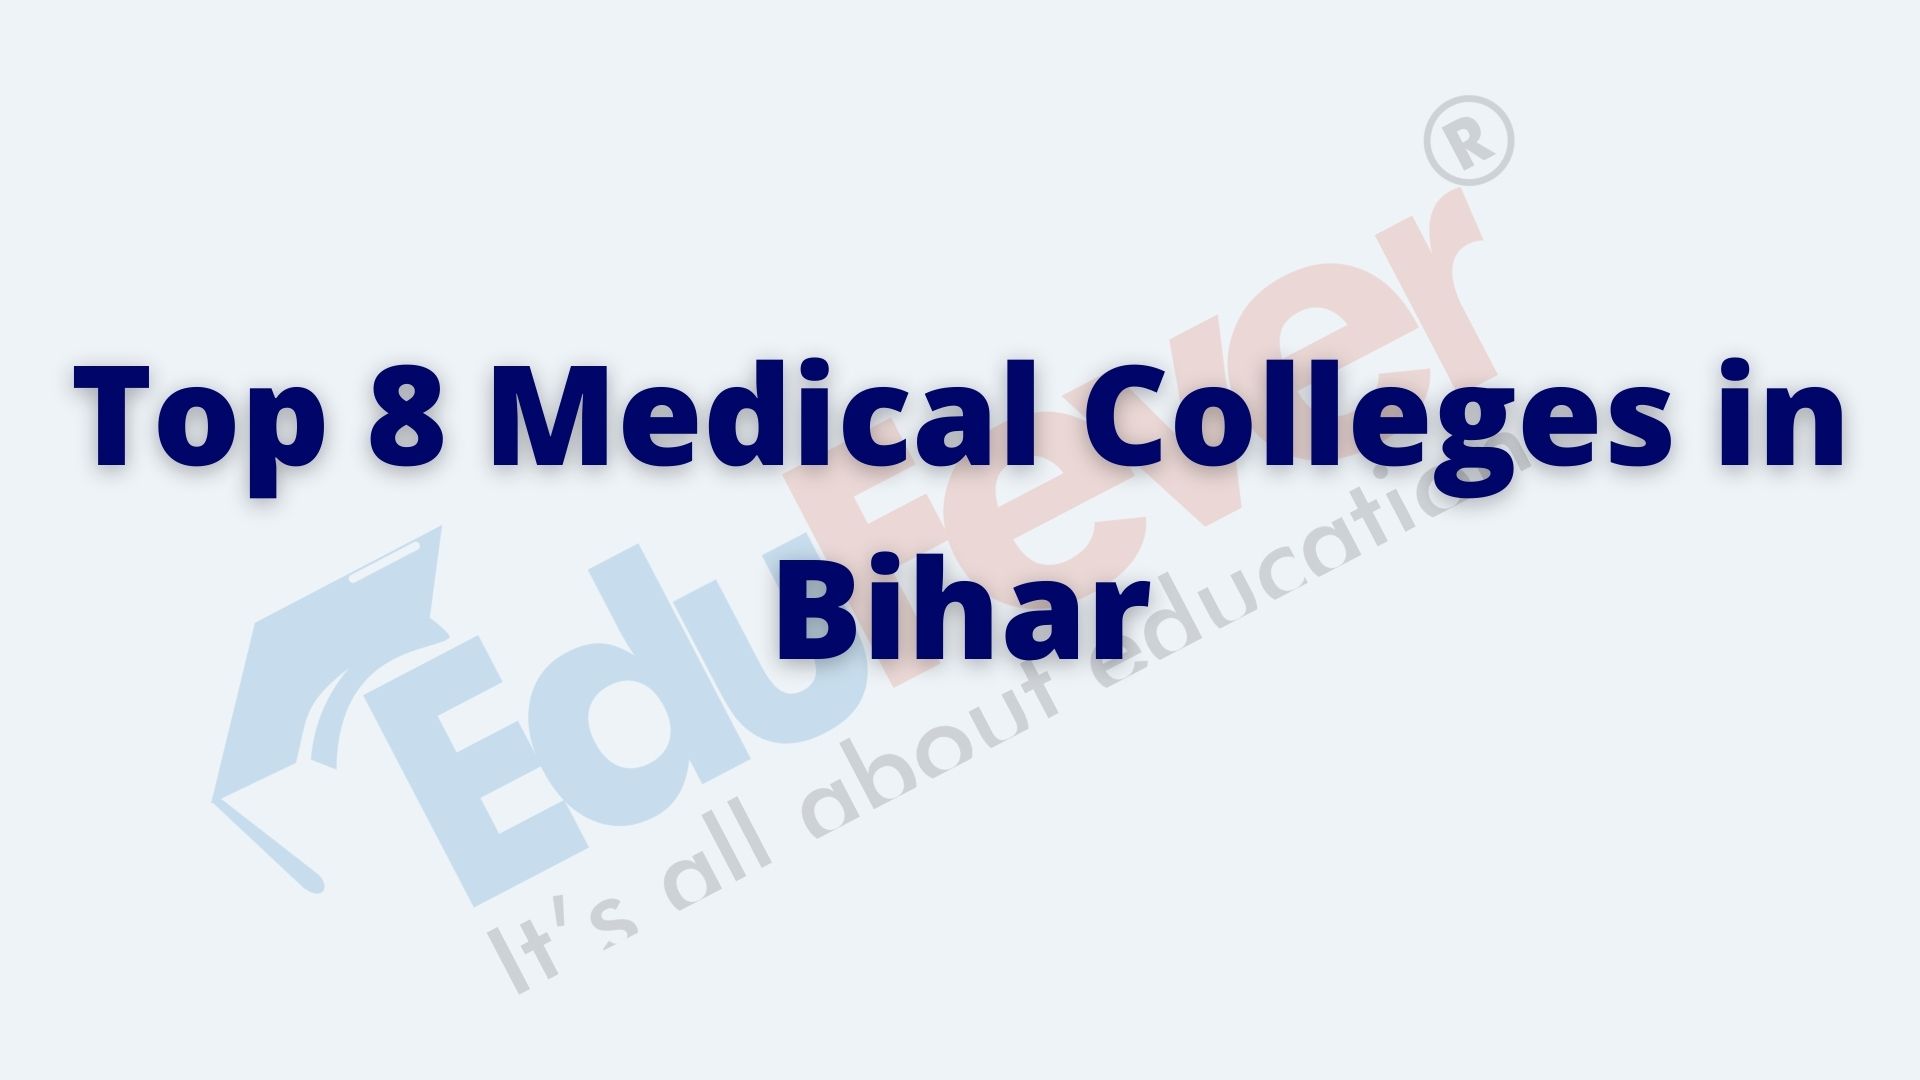 Top 8 Medical Colleges in Bihar